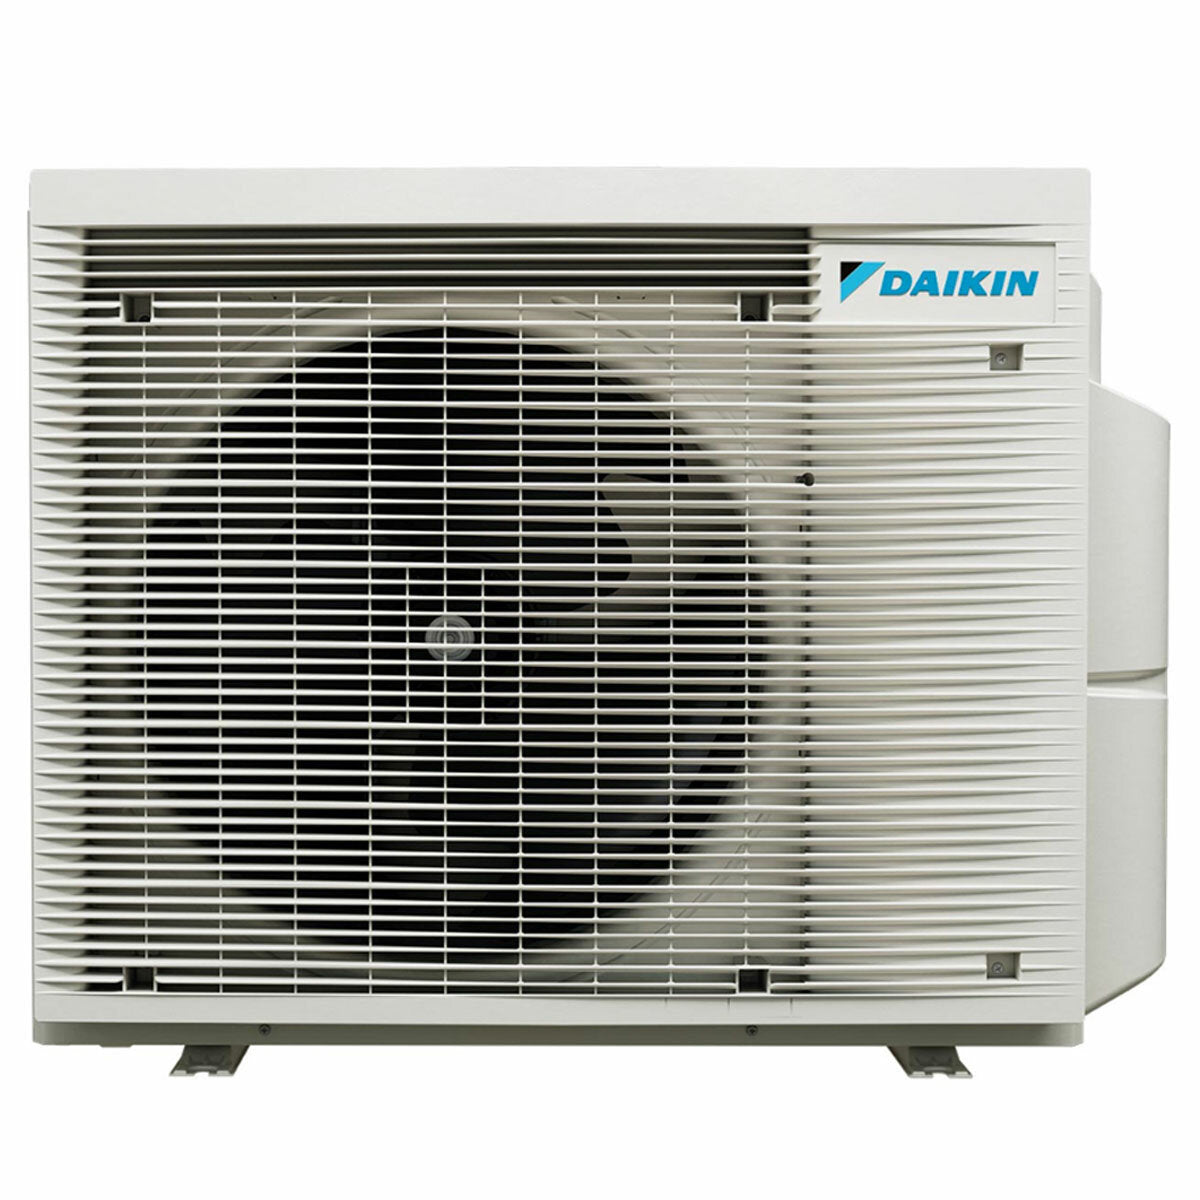 Daikin Emura 3 Trial Split Klimaanlage 7000+7000+18000 BTU Inverter A+ WLAN Außengerät 6,8 kW Silber